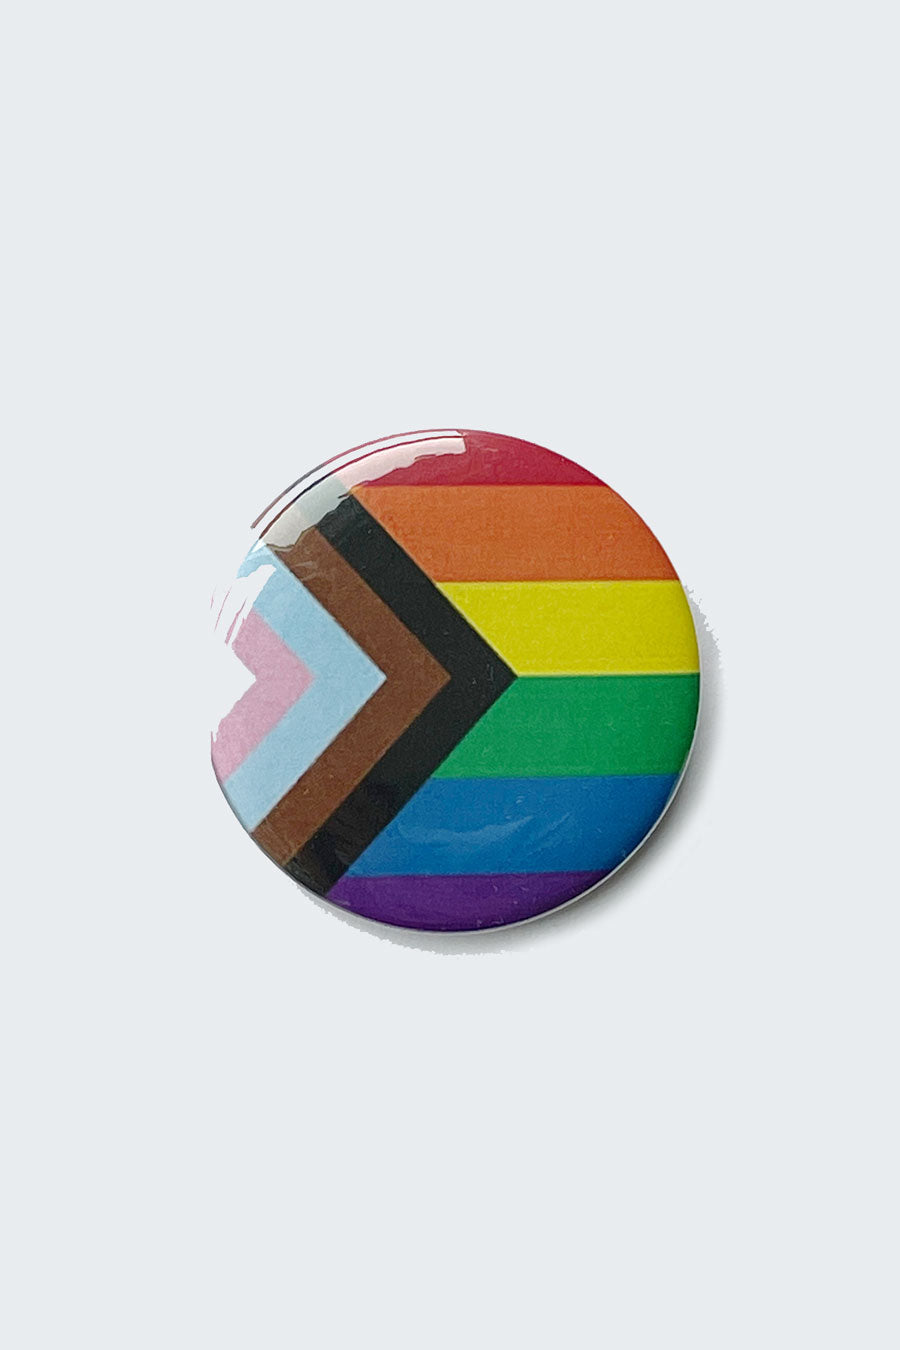 Philadelphia Pride flag buttons in bulk